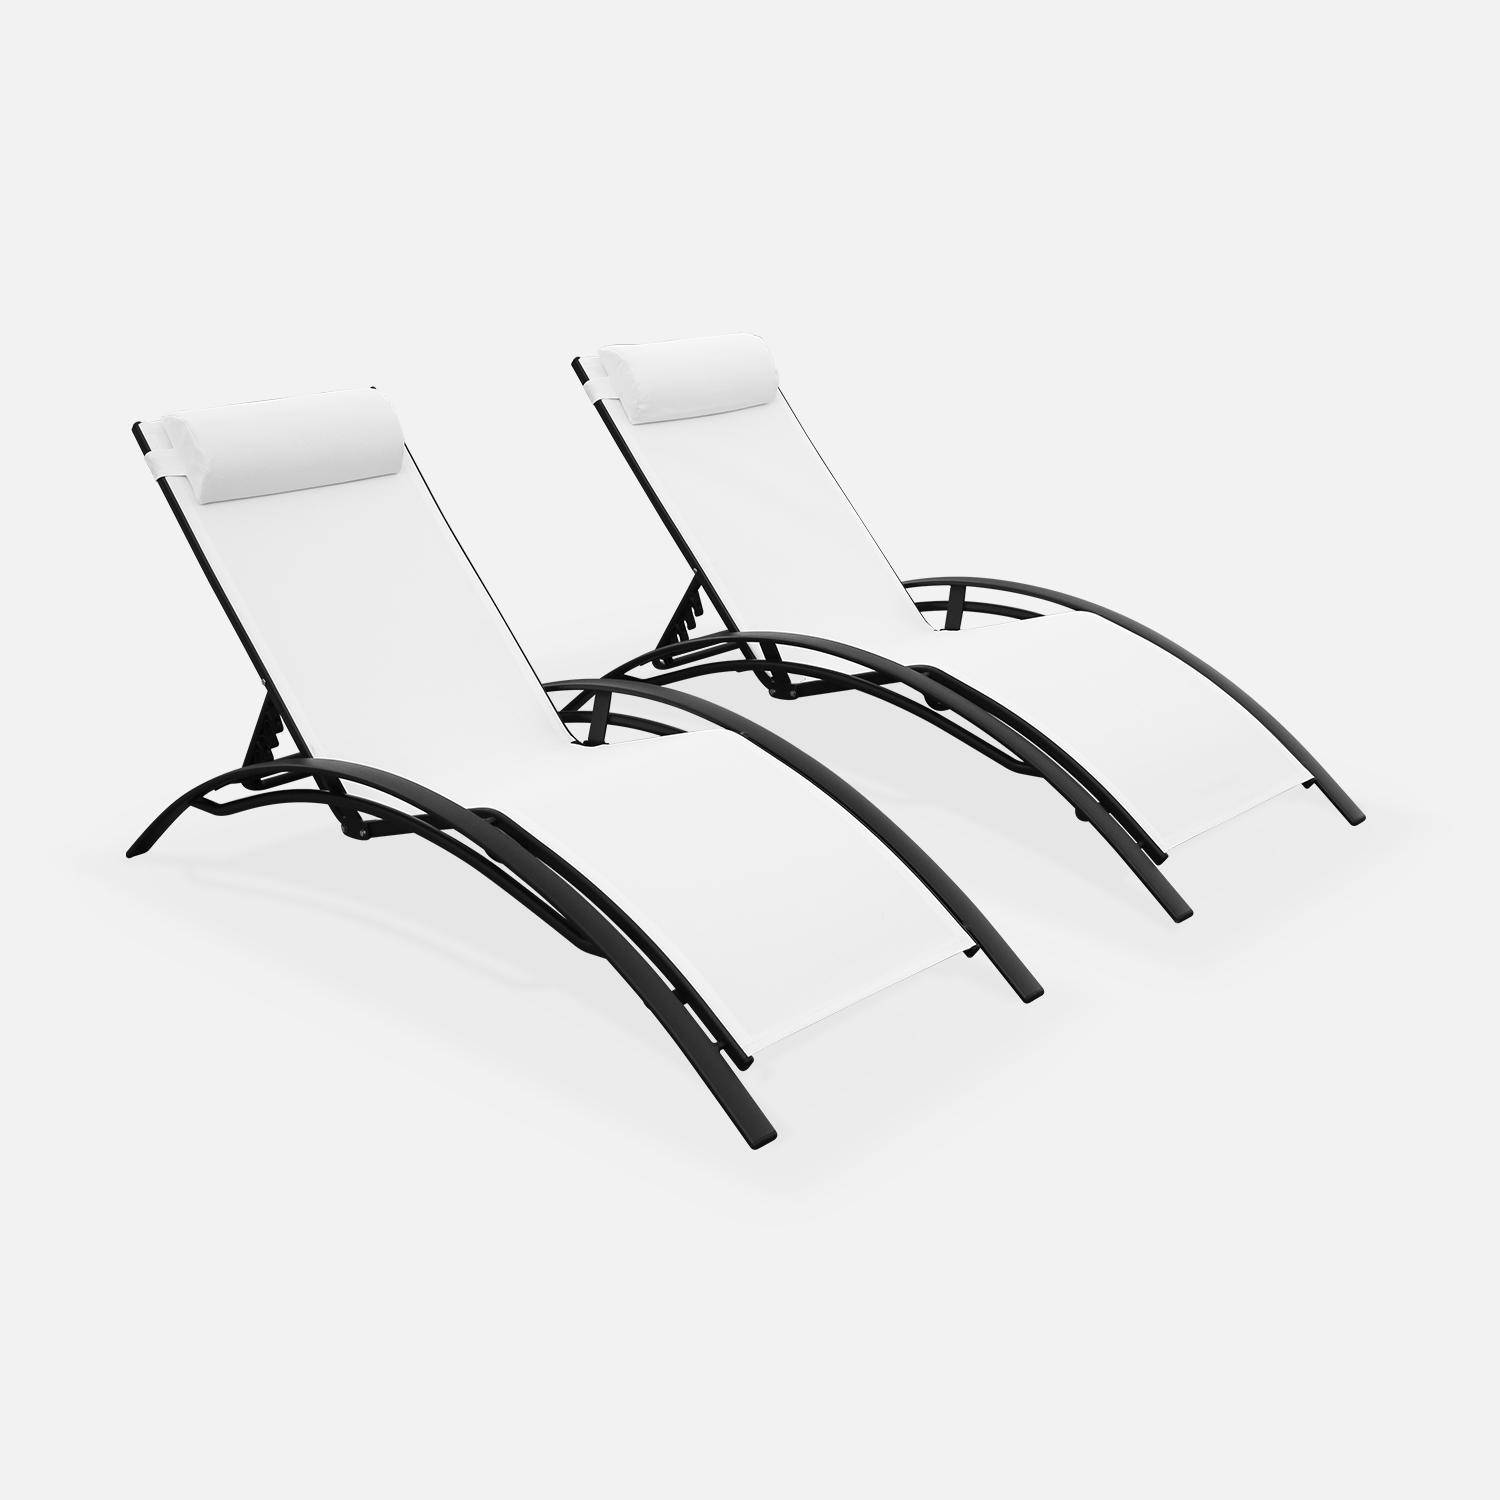 Set van 2 ligstoelen van aluminium en textileen Photo1